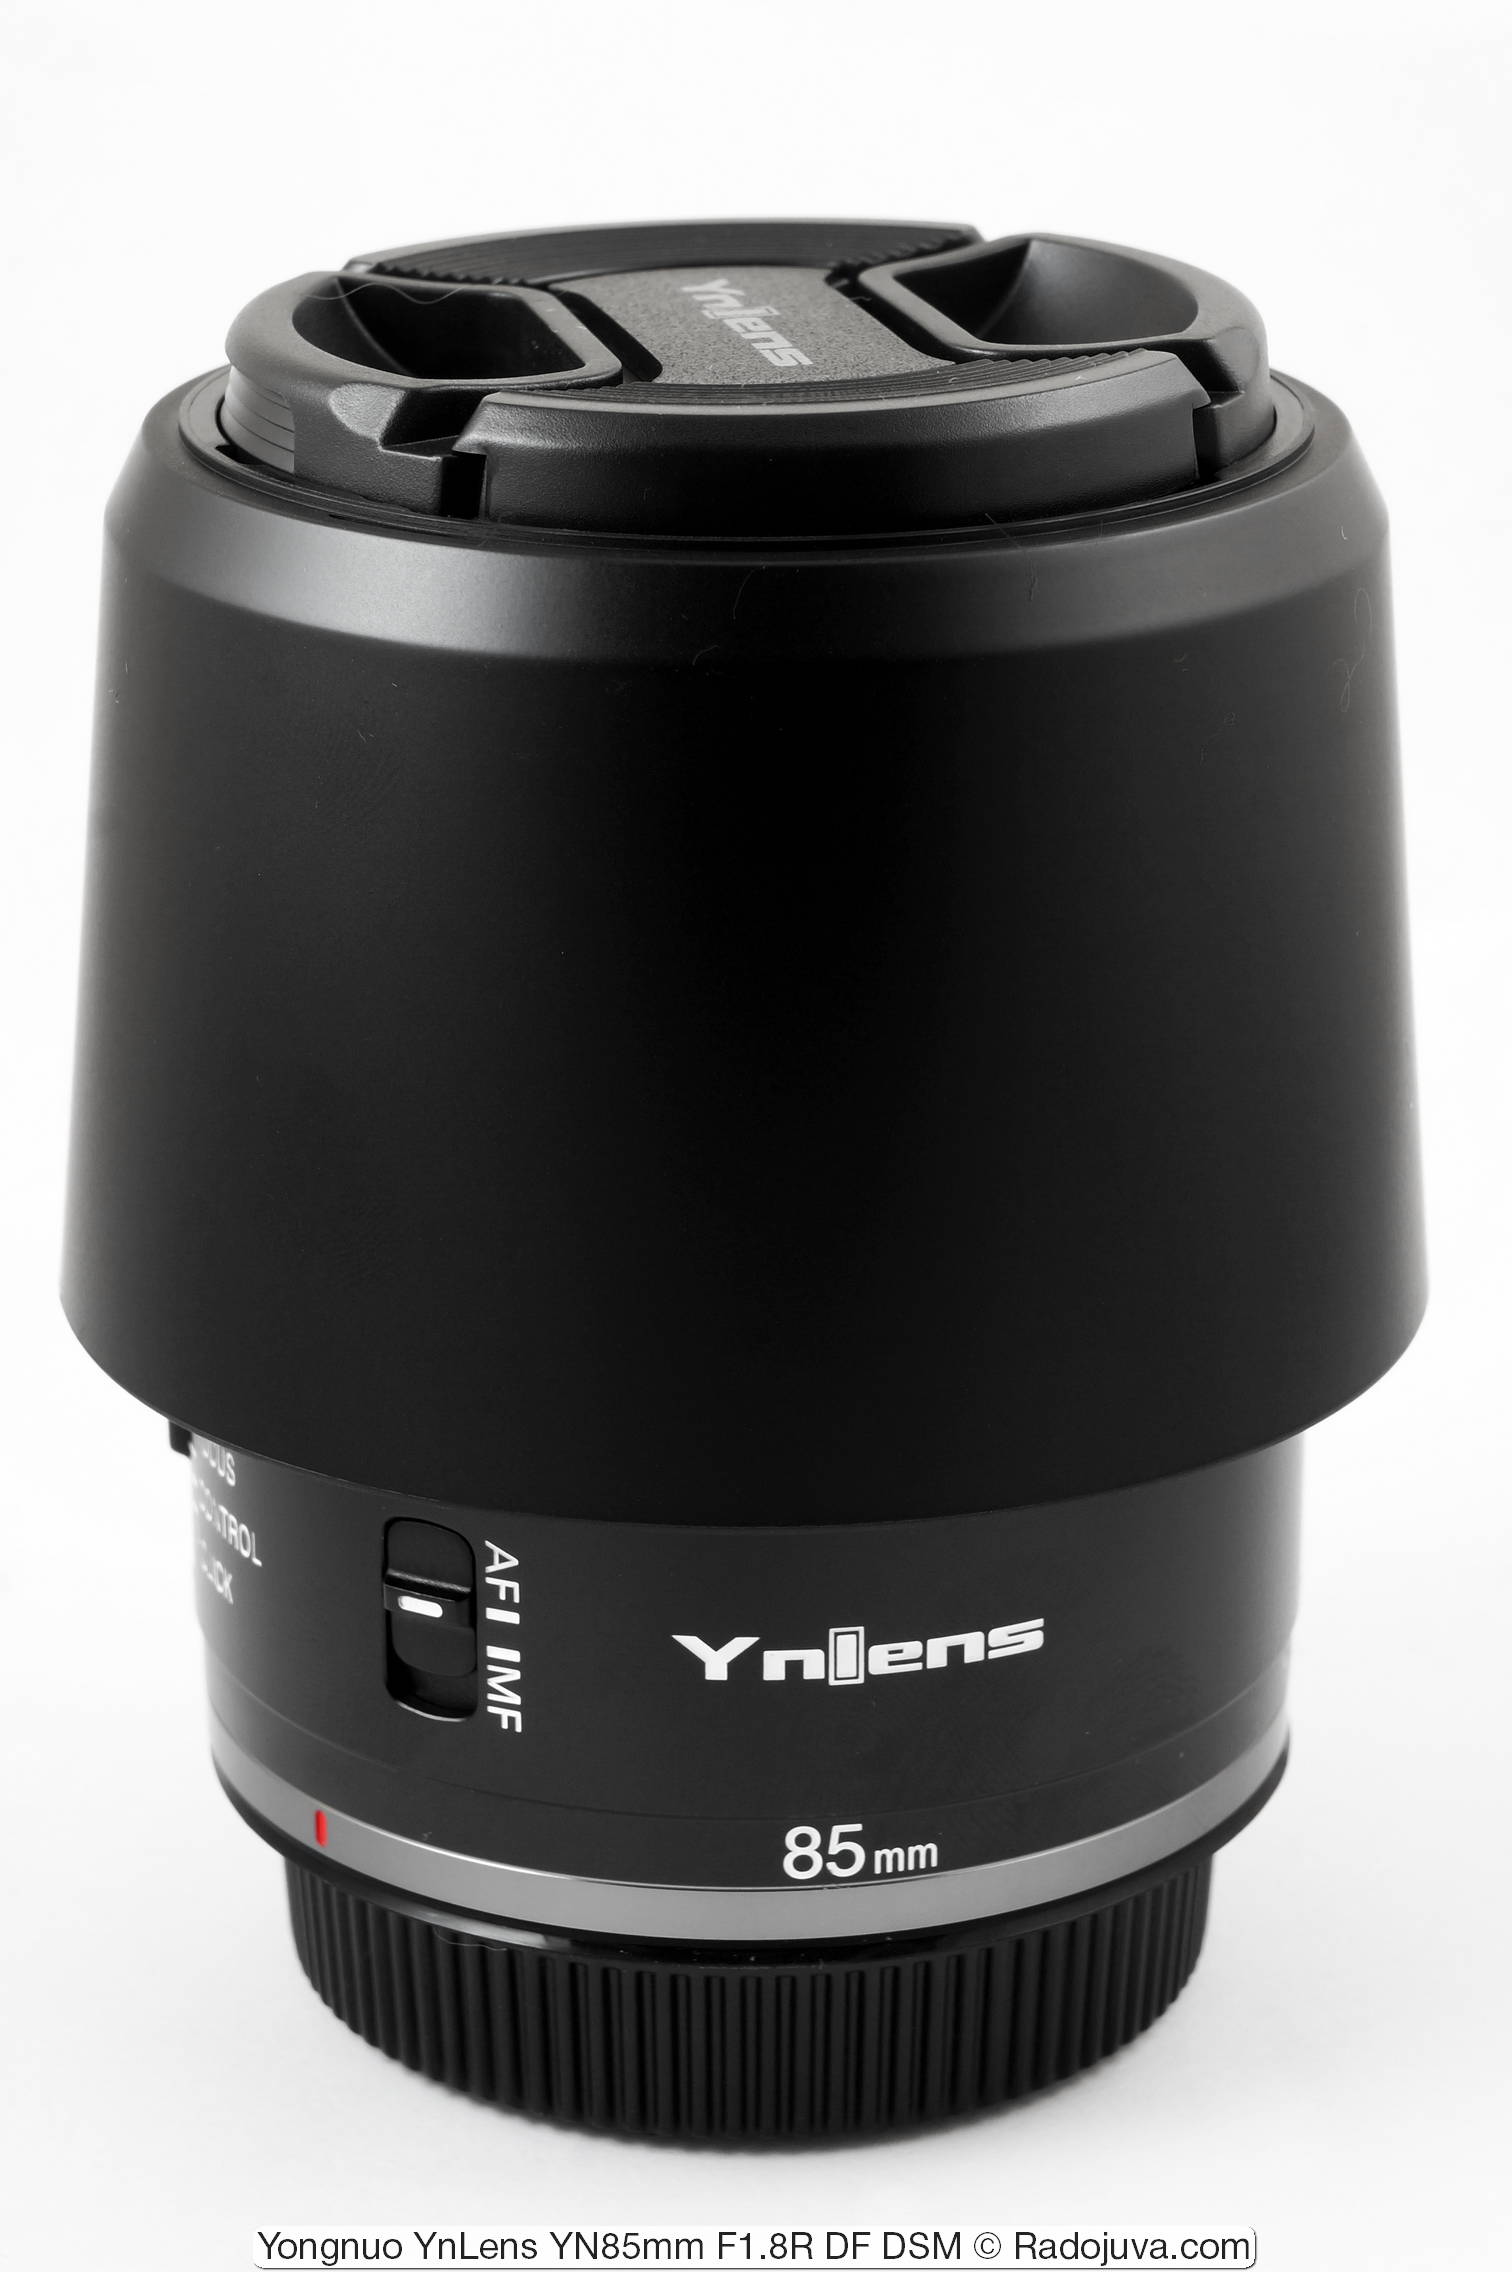 Yongnuo YnLens YN85mm F1.8R DF DSM (for Canon RF)